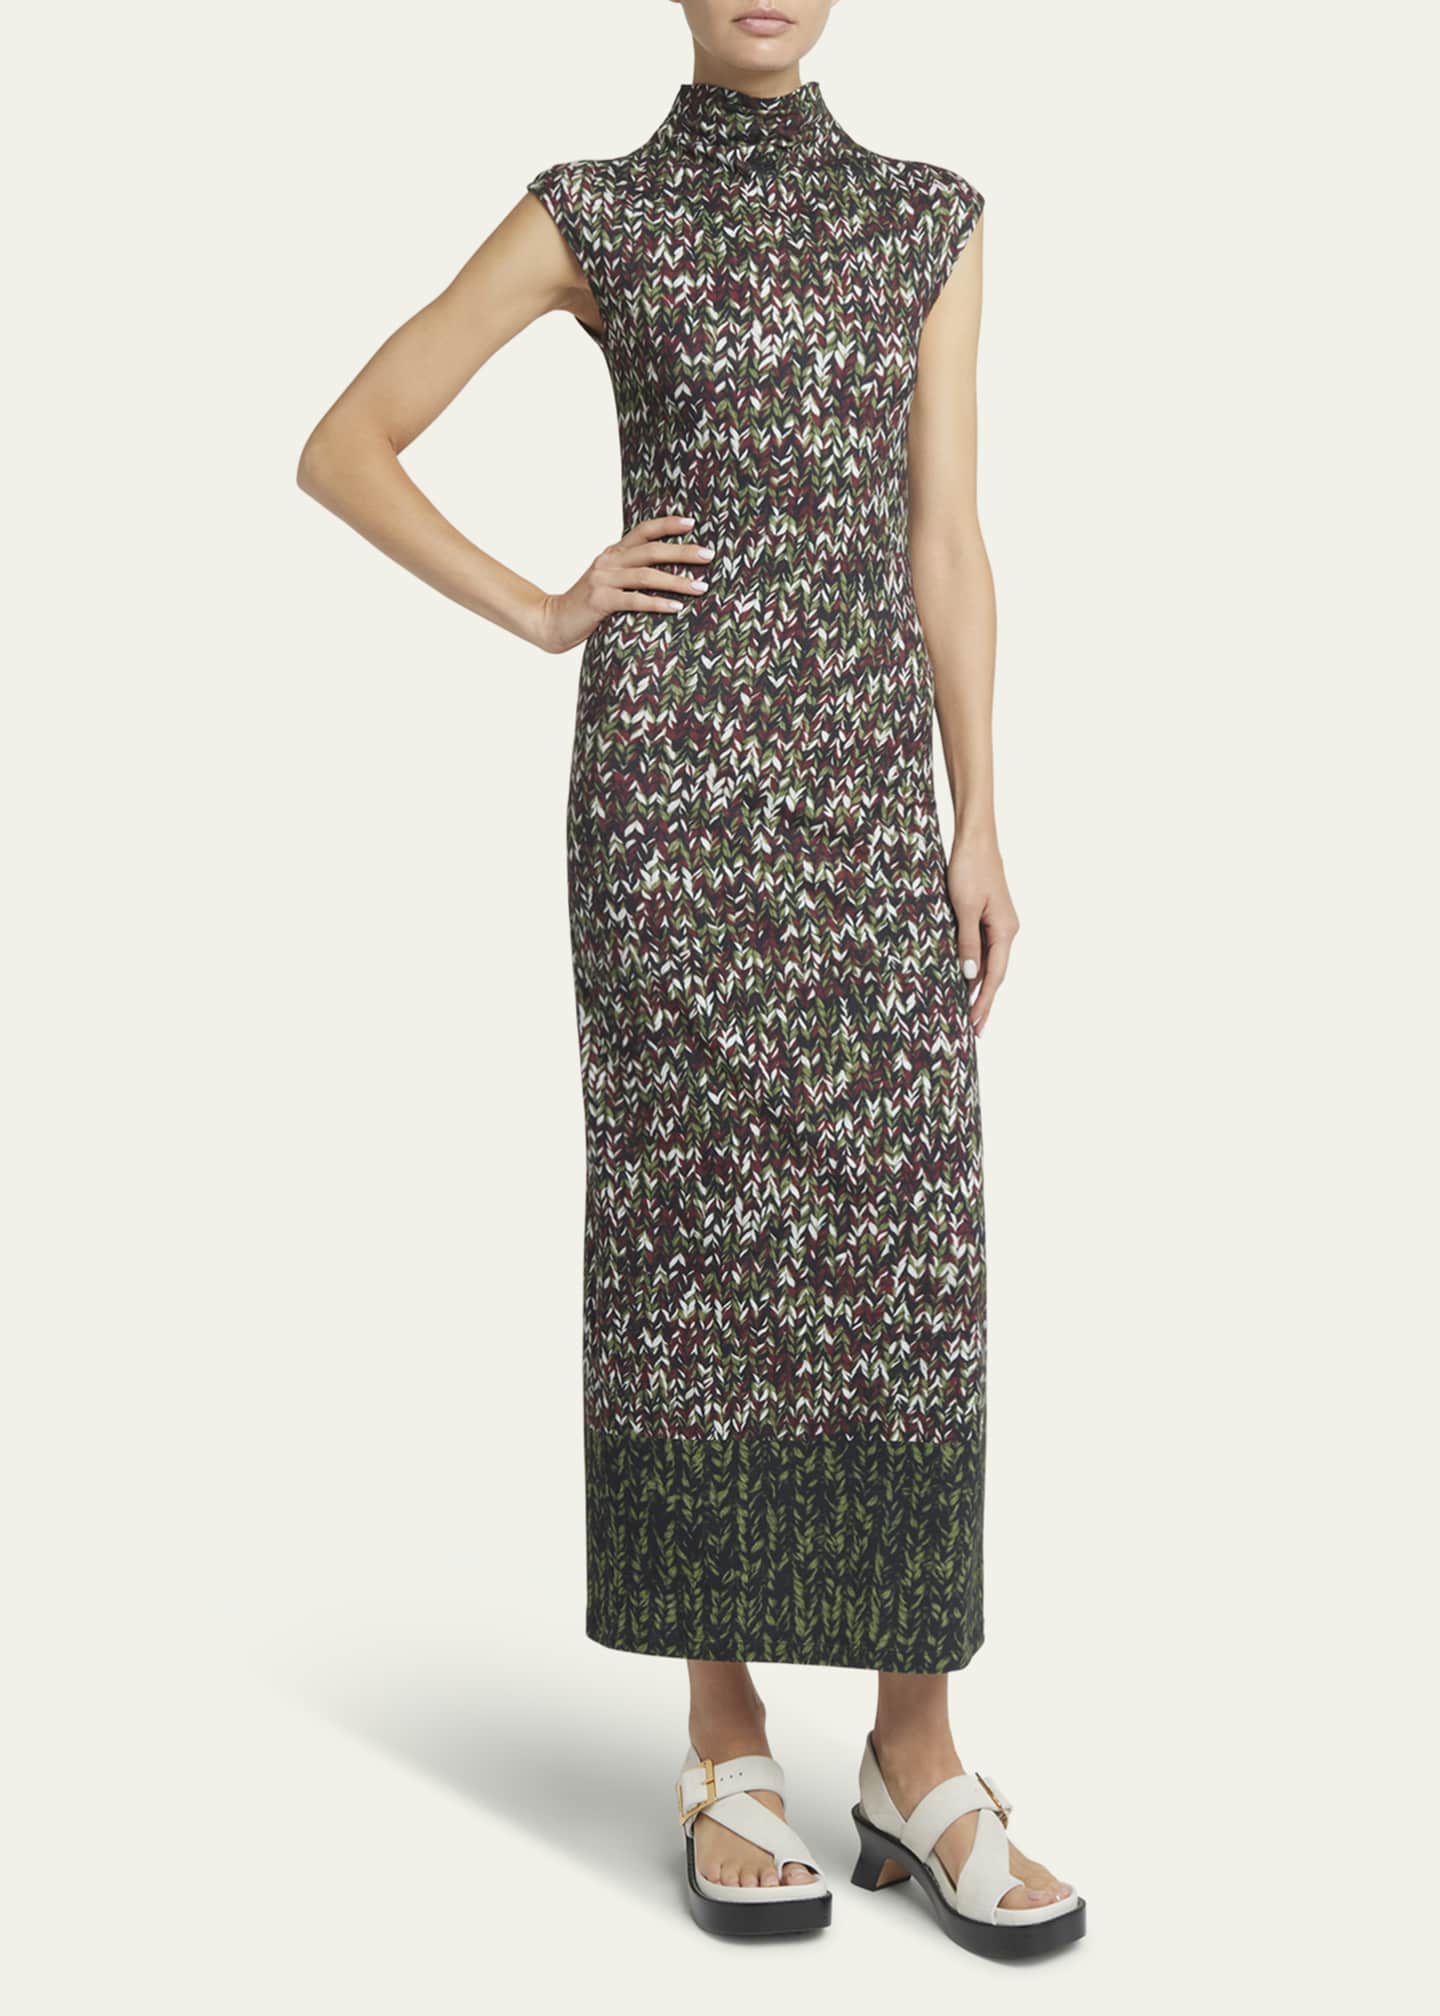 Loewe Yarn-Print Jersey Mock-Neck Column Dress - Bergdorf Goodman